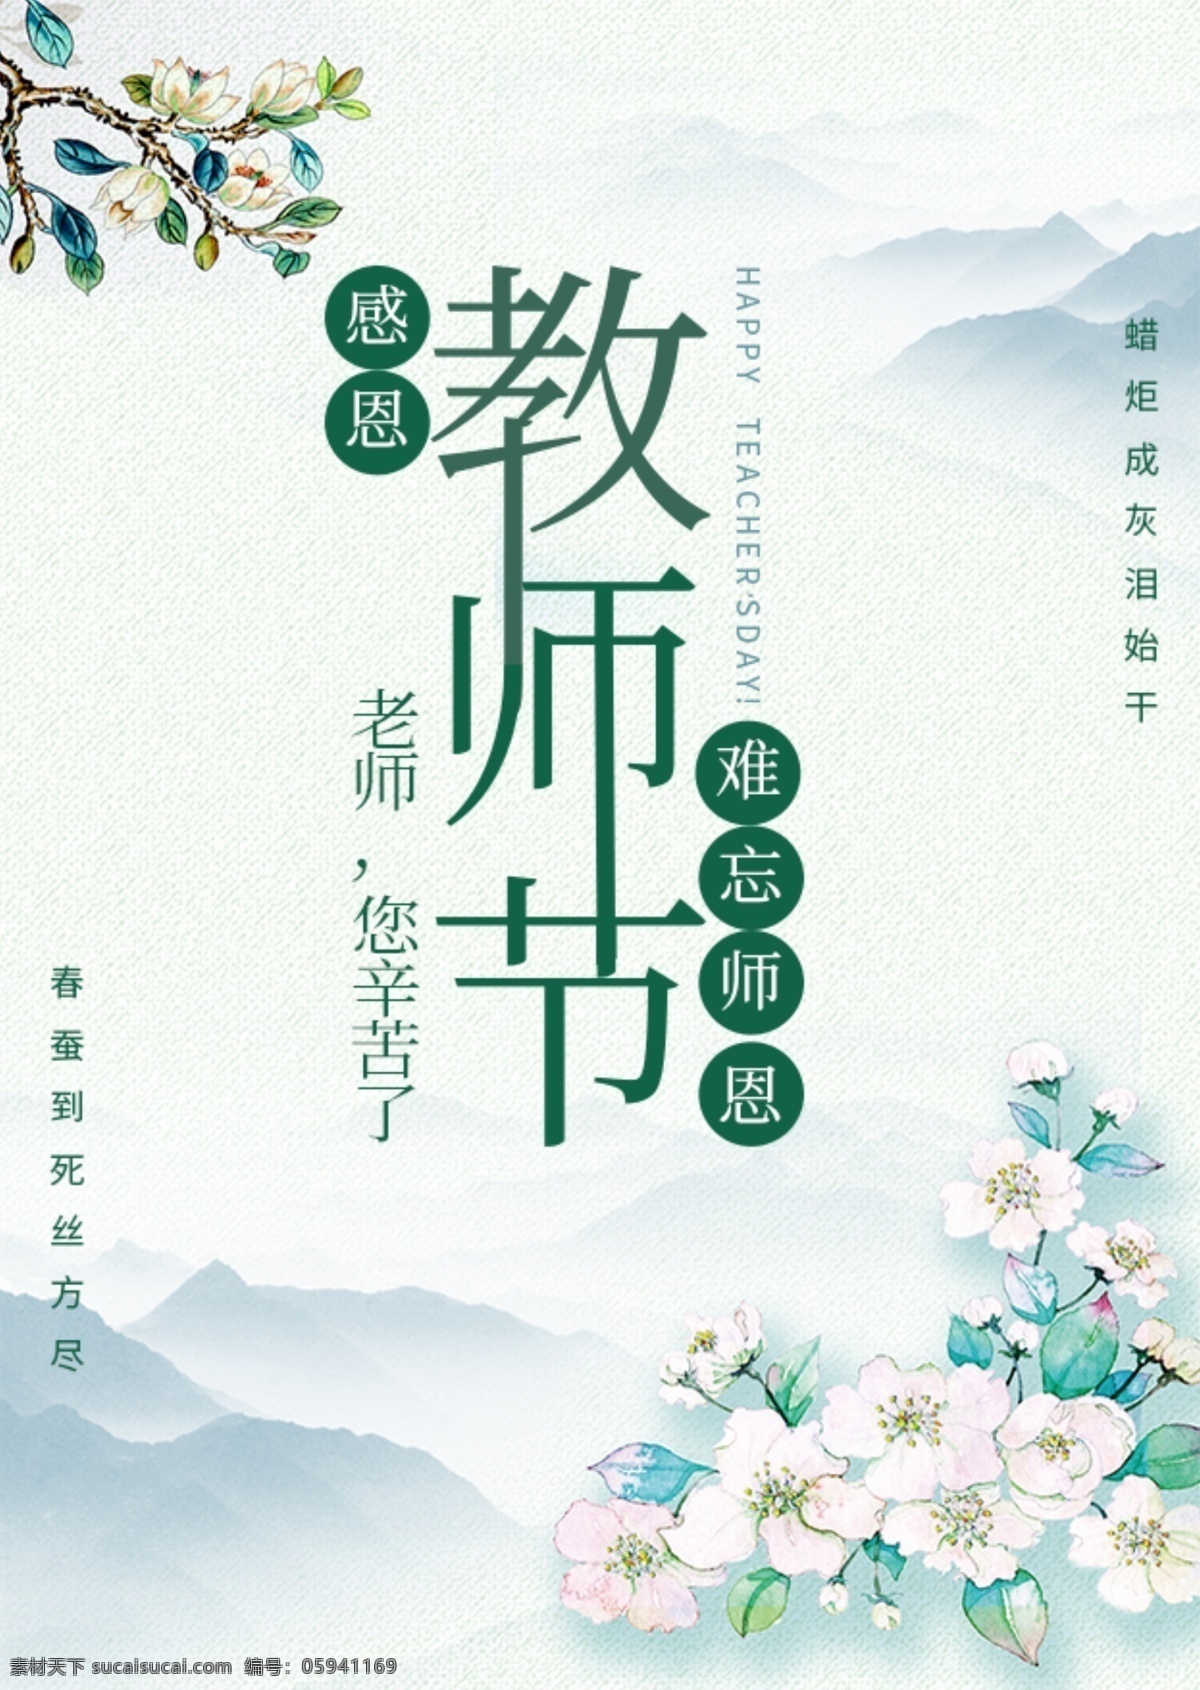 教师节 节日 小 清新 海报 展板 展架 老师 字体